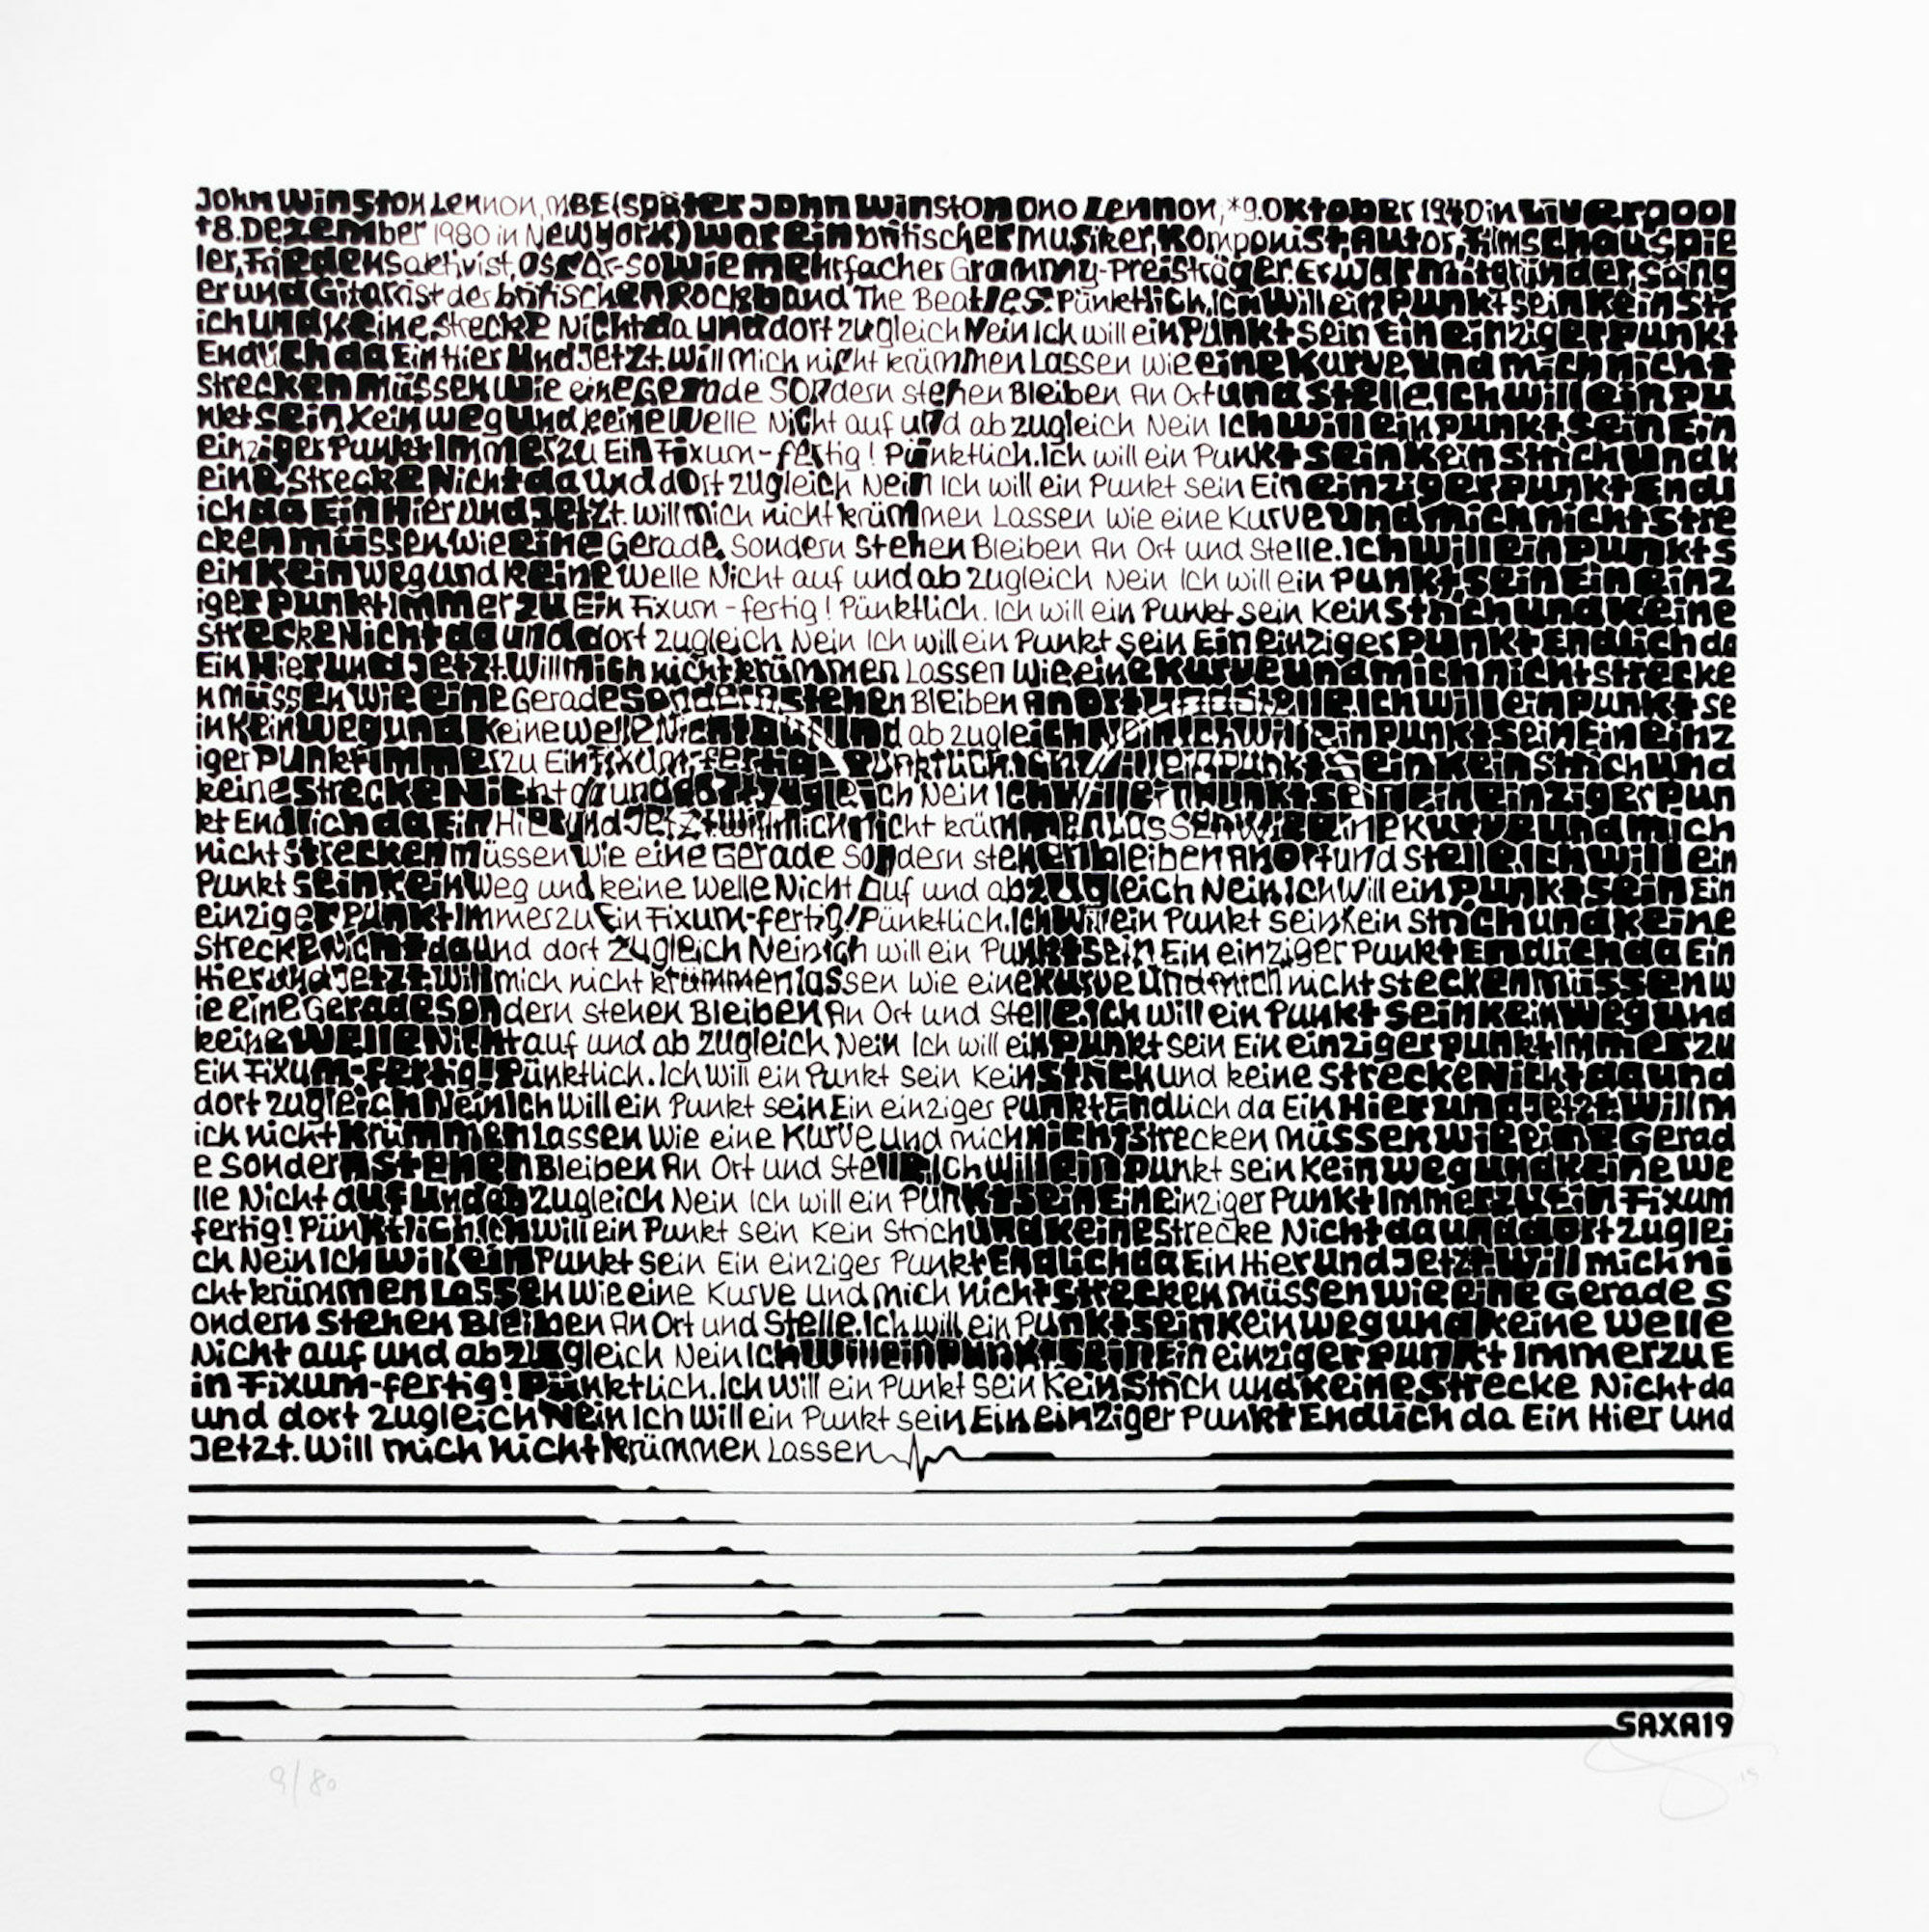 Beeld "John Lennon" (2019) von SAXA